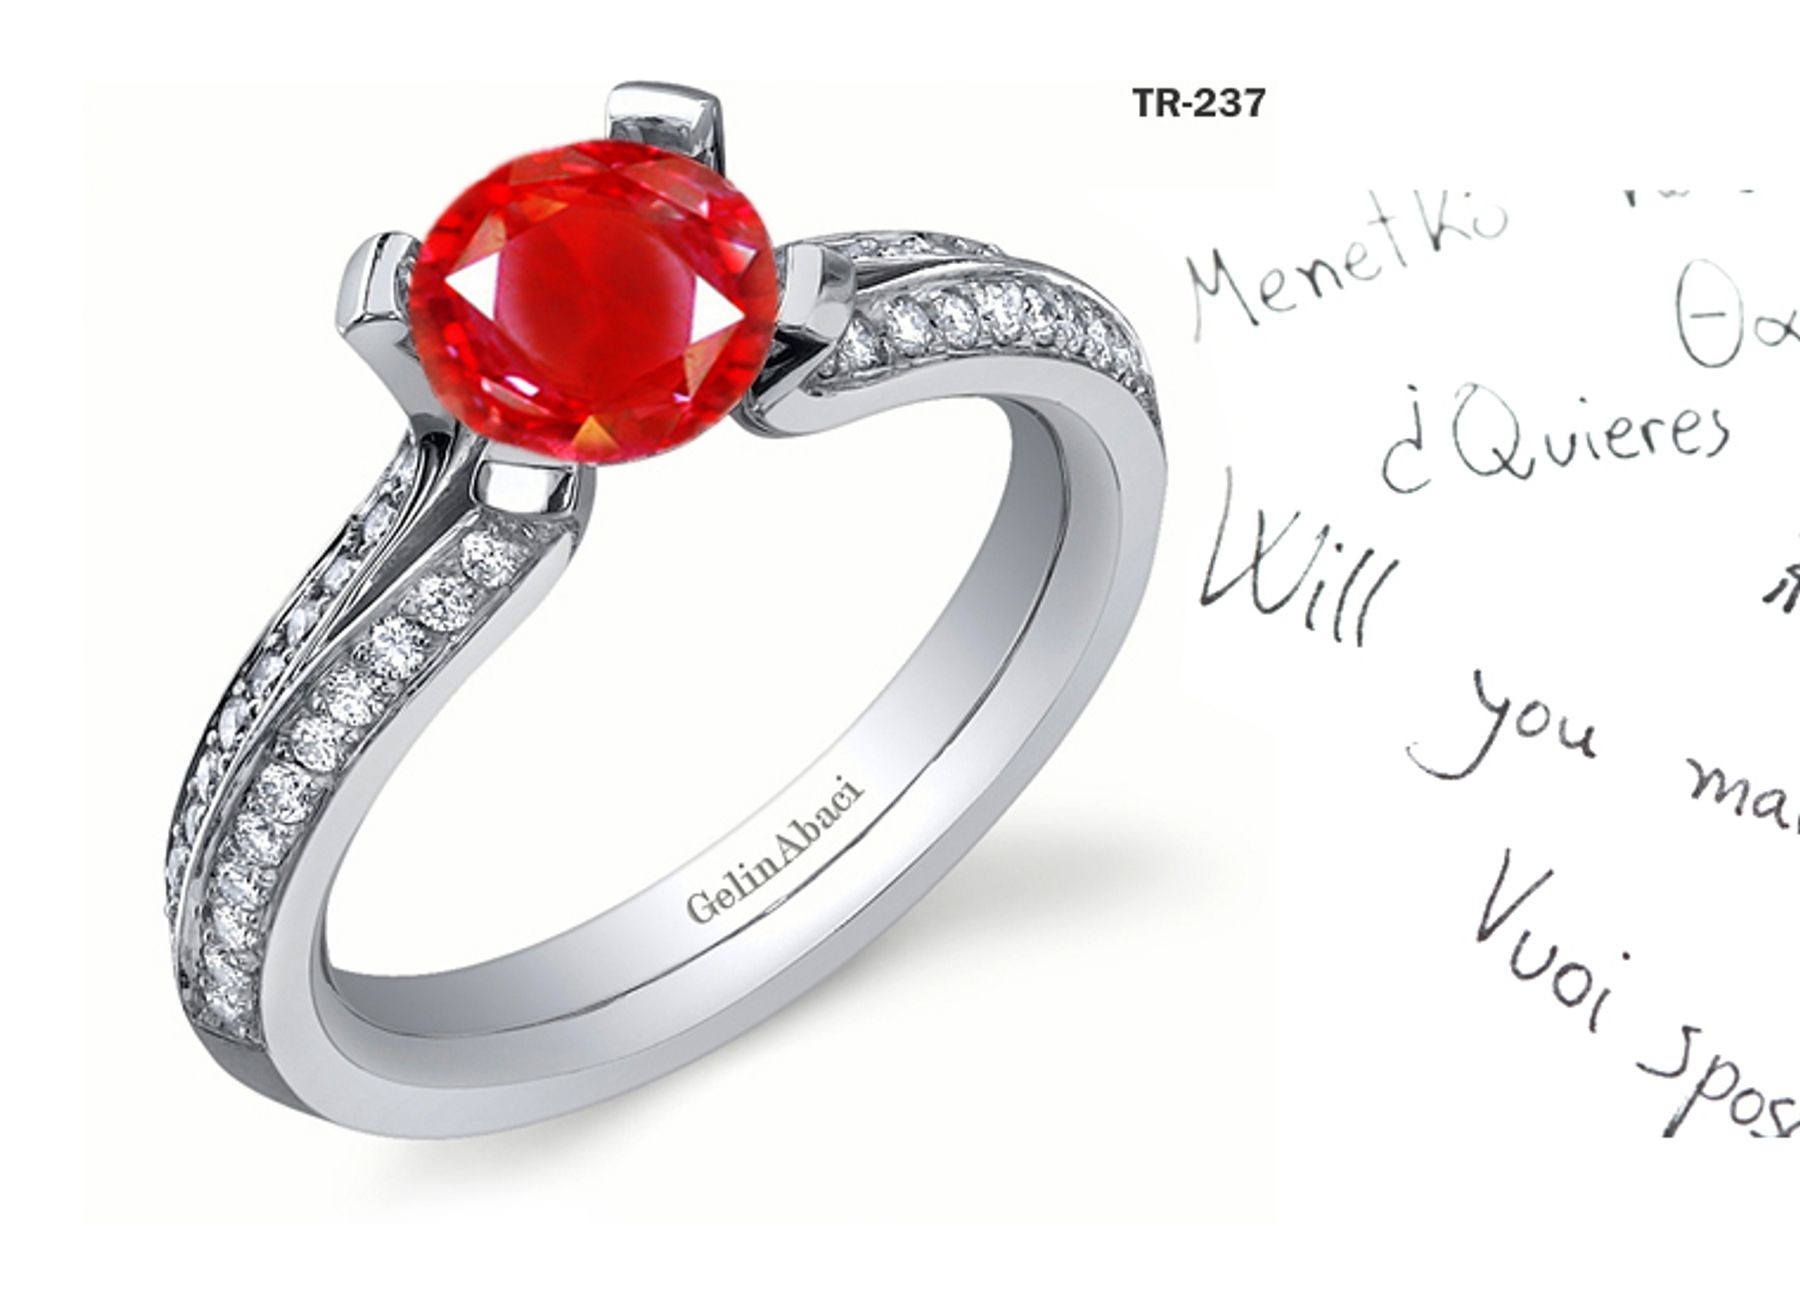 Premier Diamond Jewelry: Tension Set RUby Diamond Rings